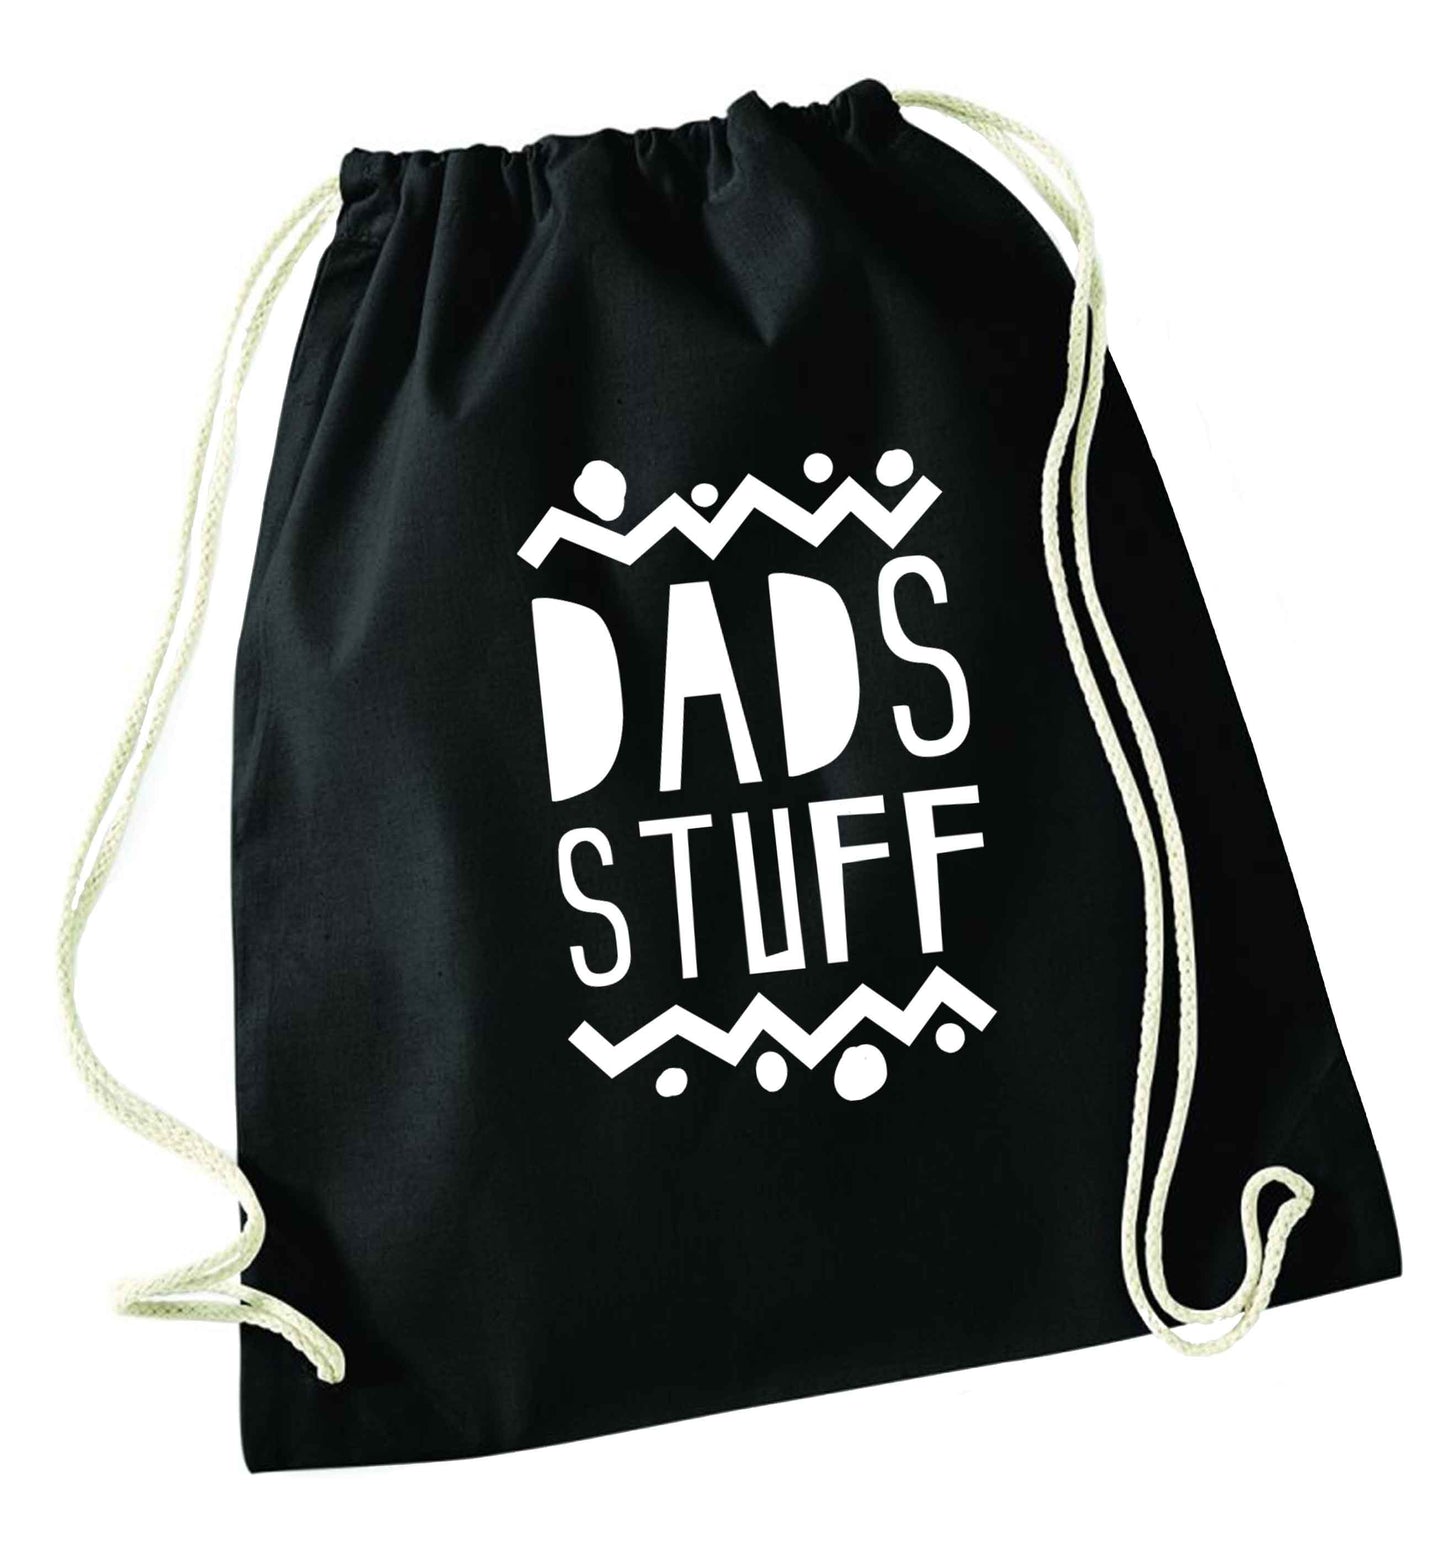 Dads stuff black drawstring bag